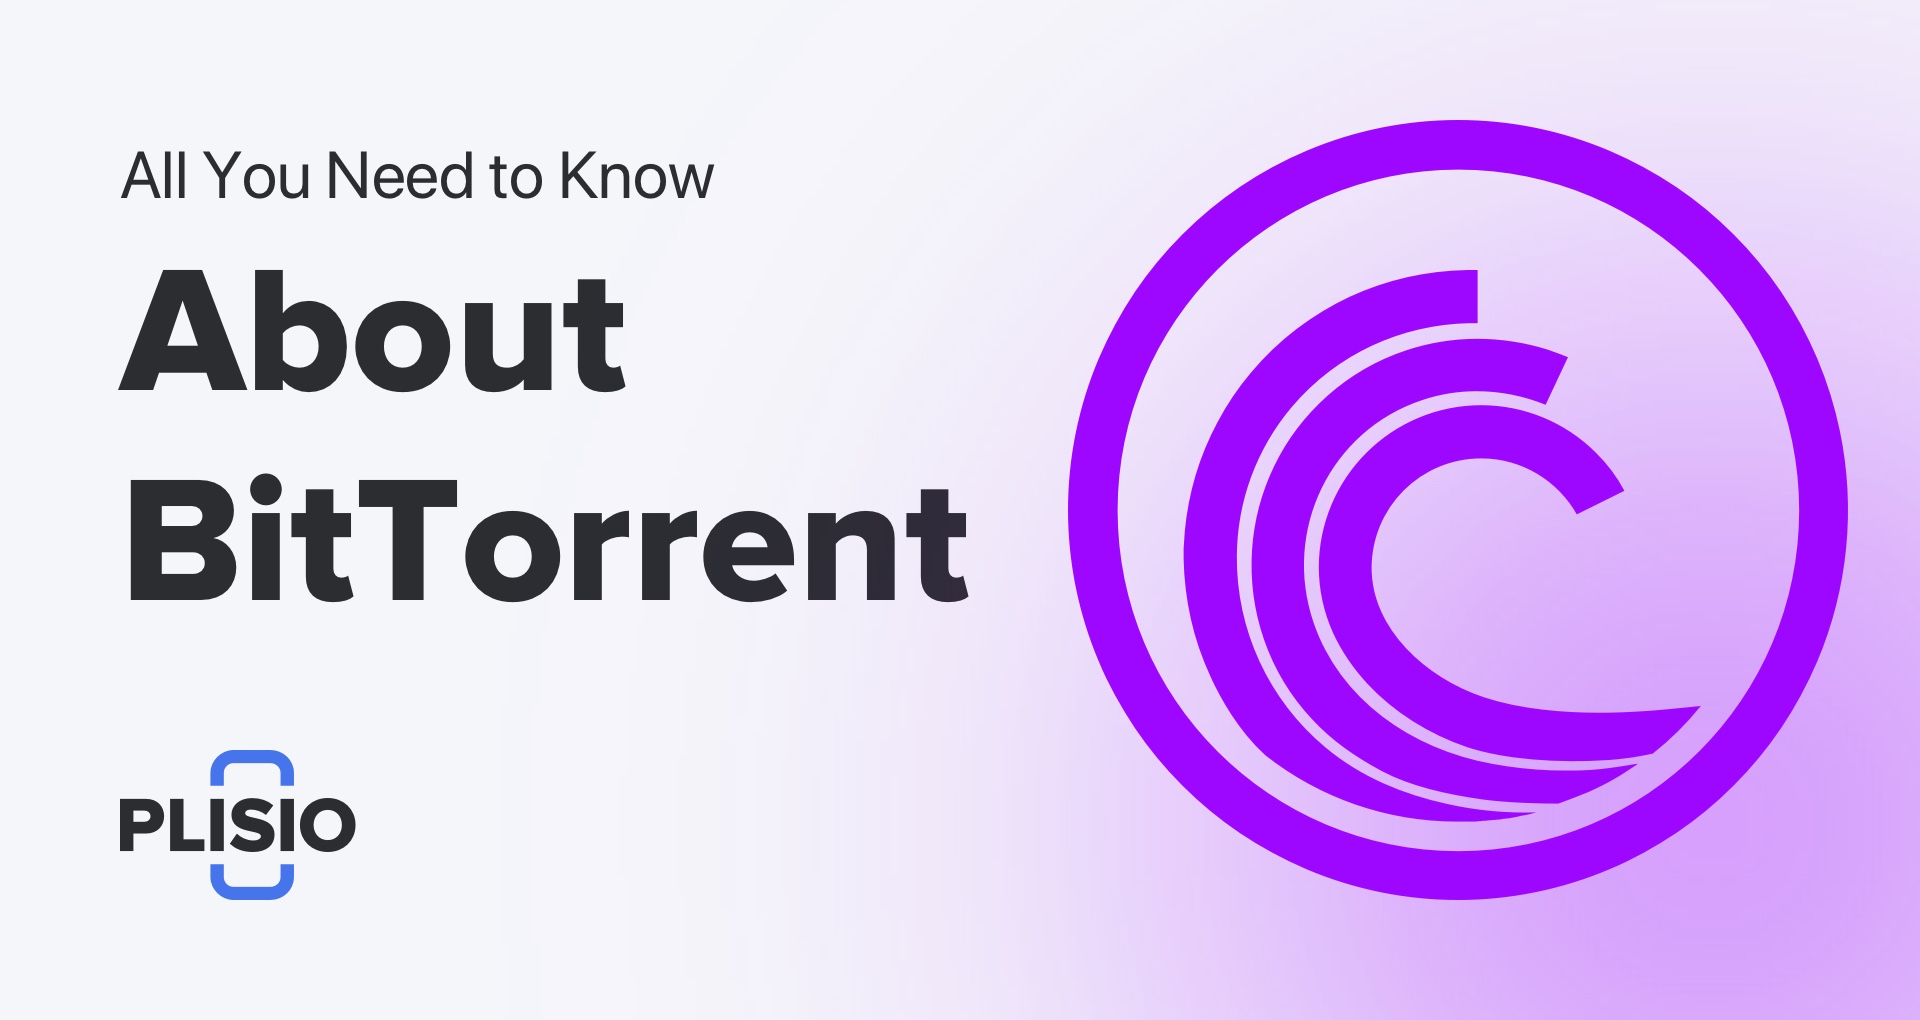 ทุกสิ่งที่คุณต้องการรู้เกี่ยวกับ BitTorrent และวิธียอมรับมัน